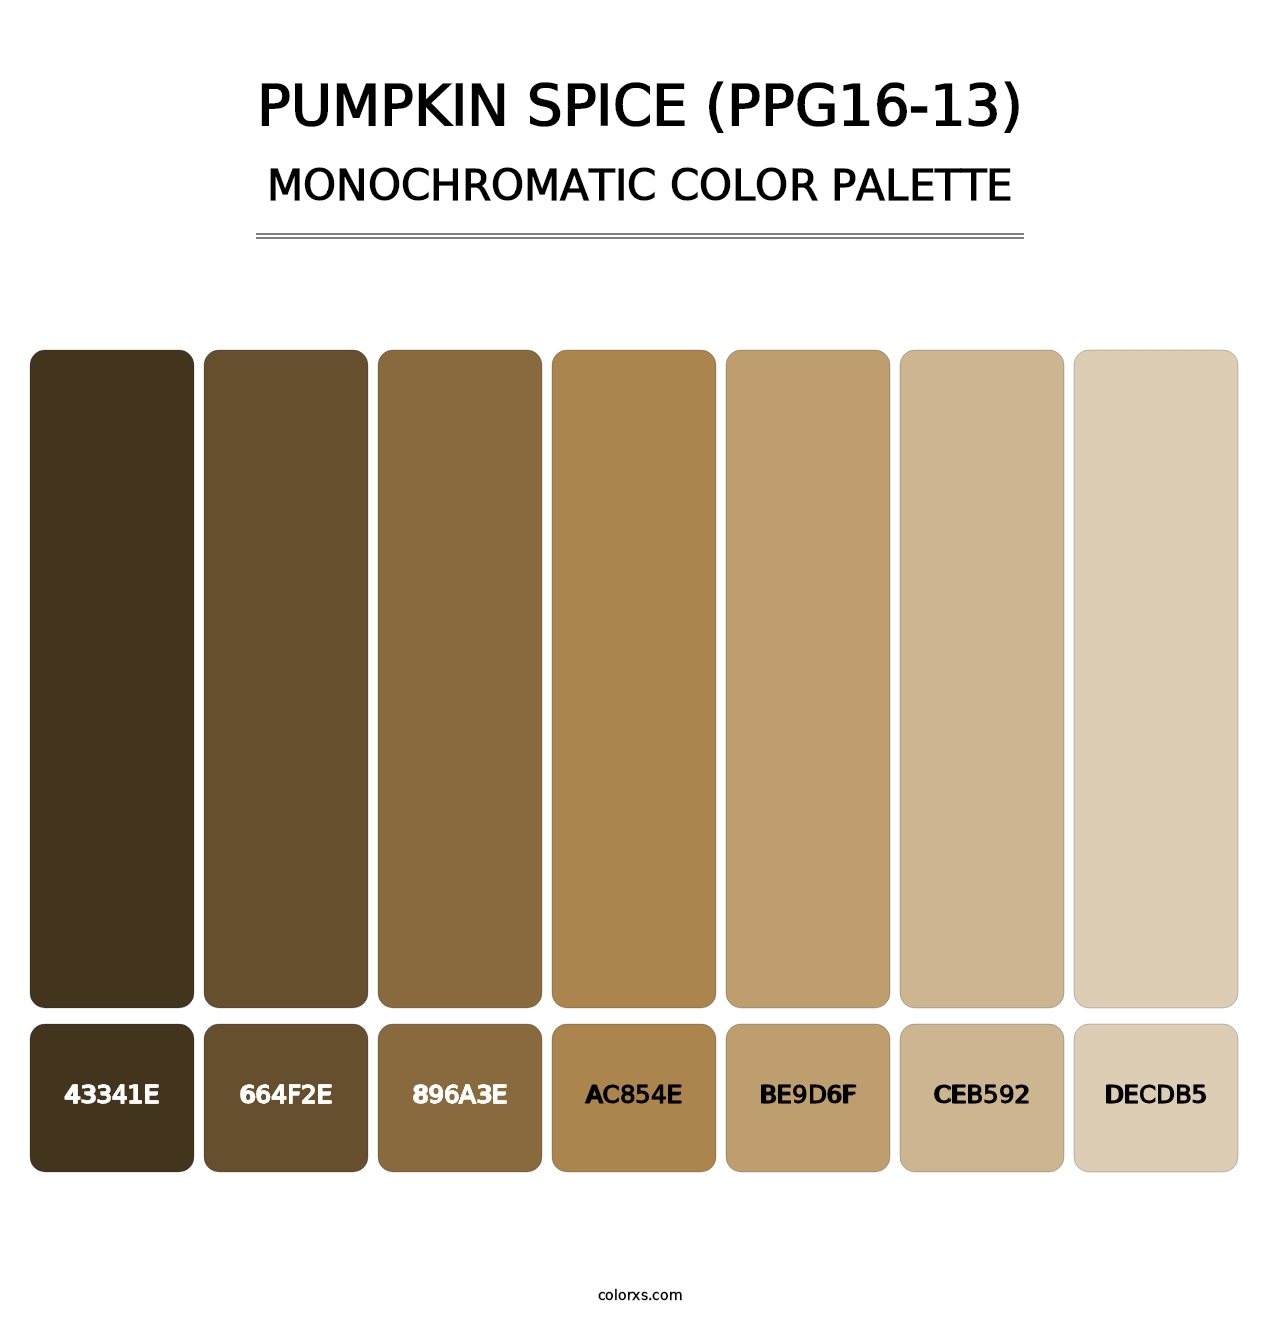 Pumpkin Spice (PPG16-13) - Monochromatic Color Palette